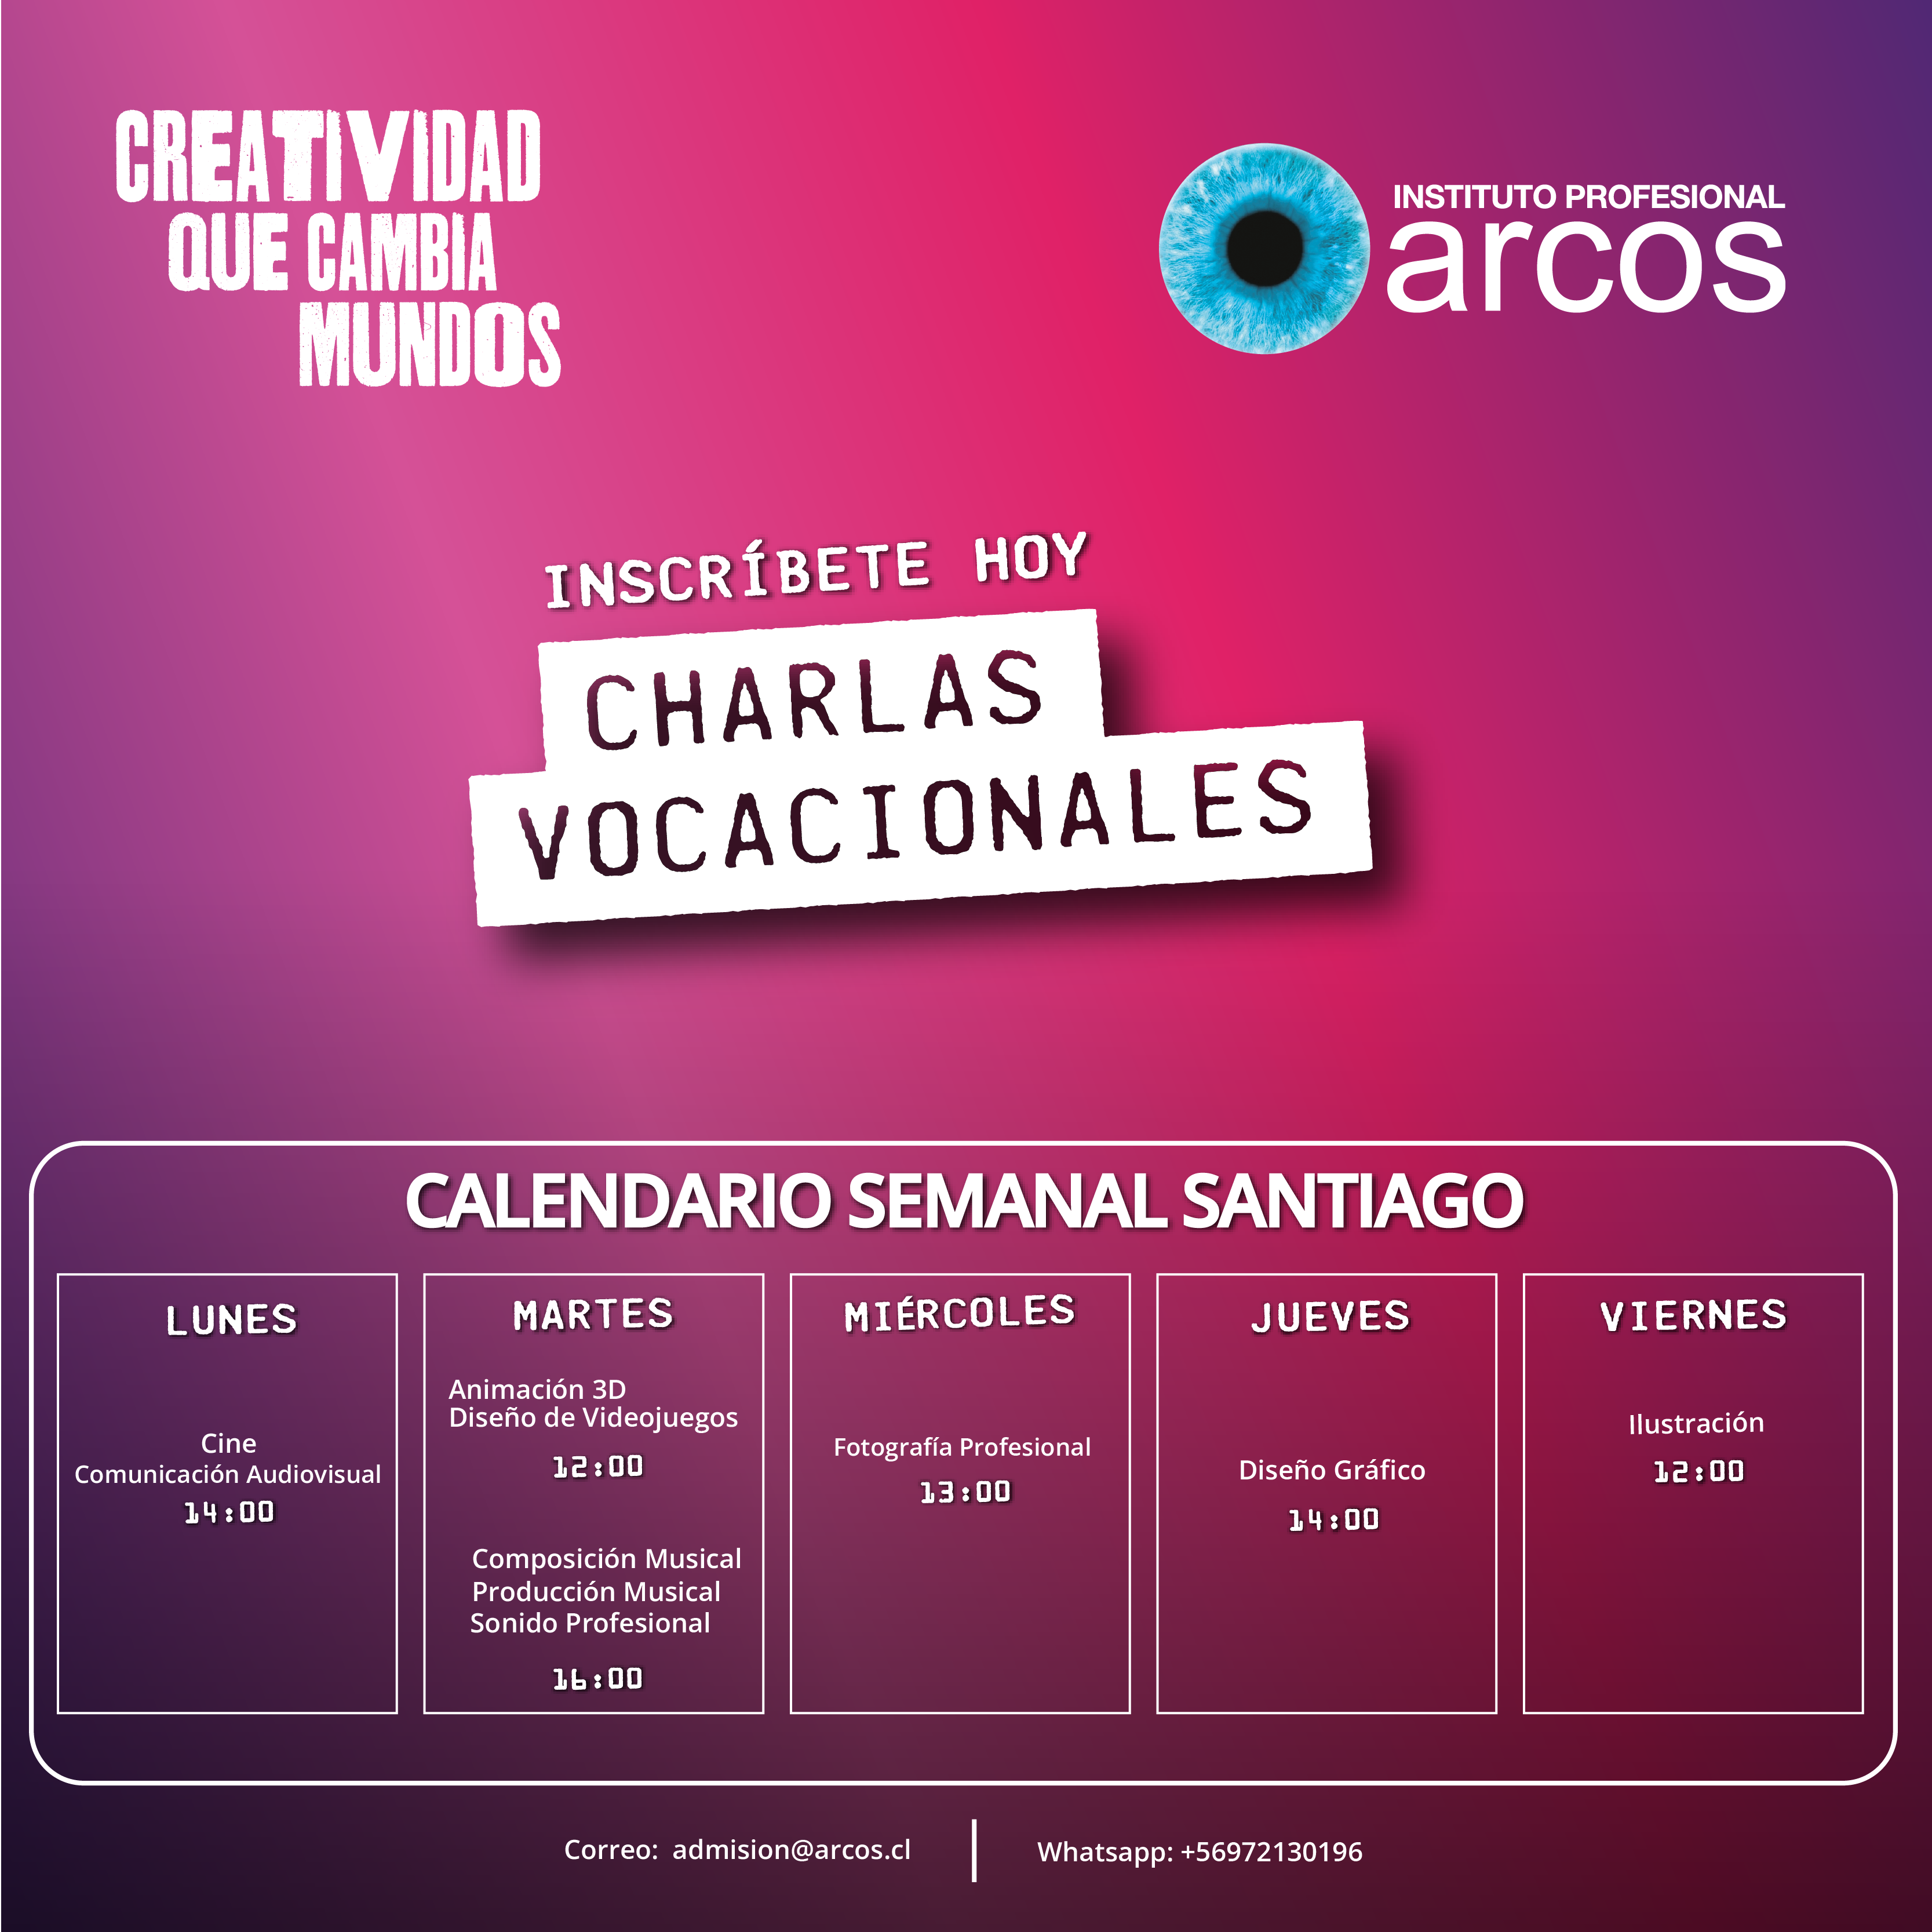 ARCOS INVITA A SUS CHARLAS VOCACIONALES